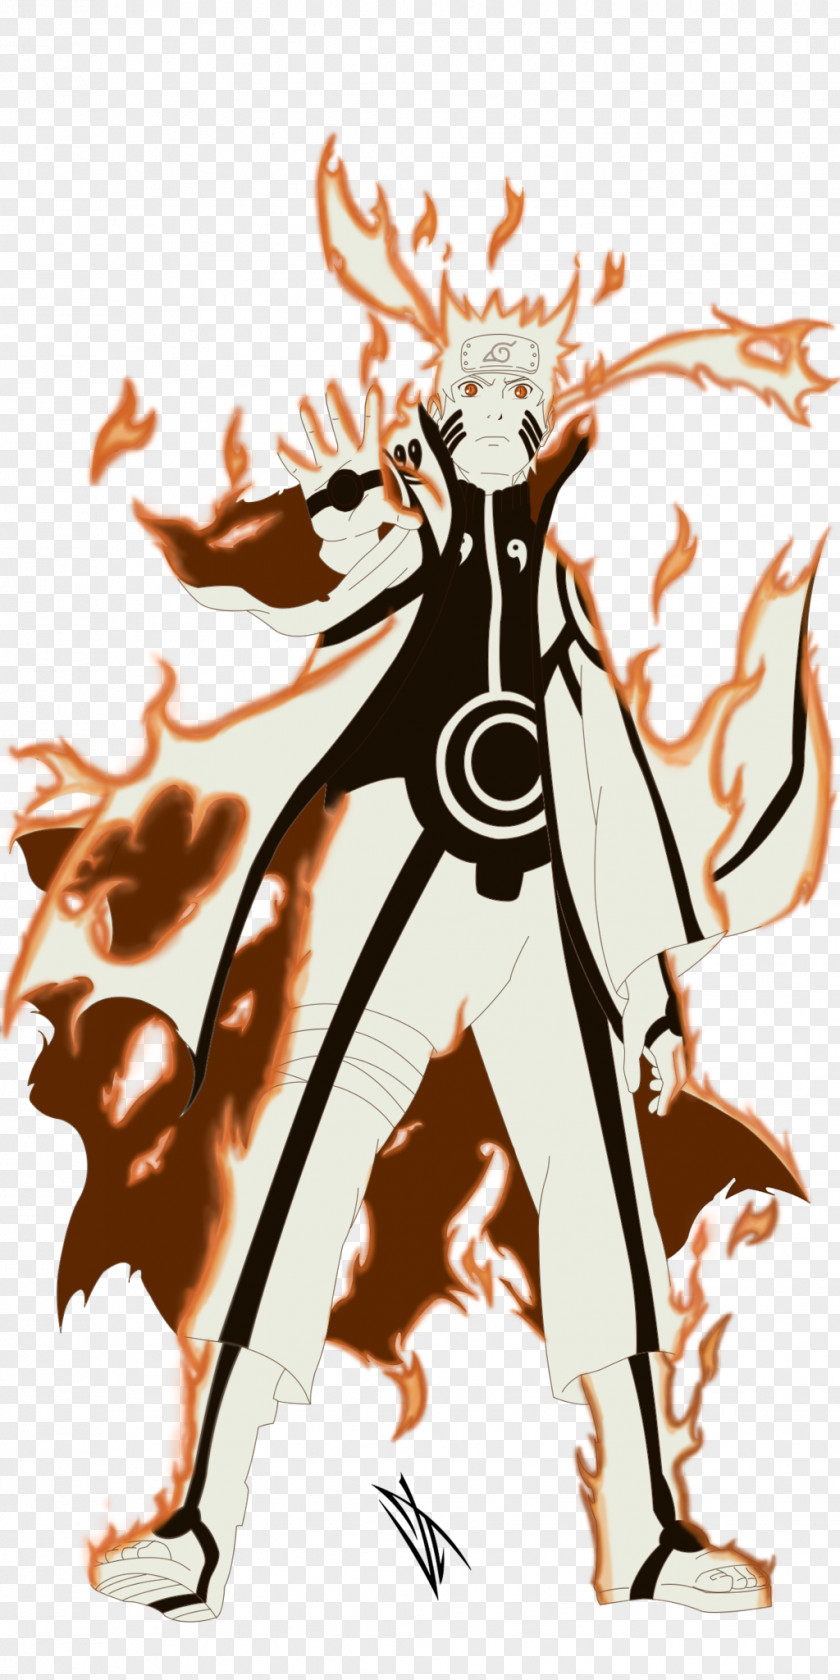 Naruto Uzumaki Sasuke Uchiha Obito Kurama Tailed Beasts PNG Image PNGHERO